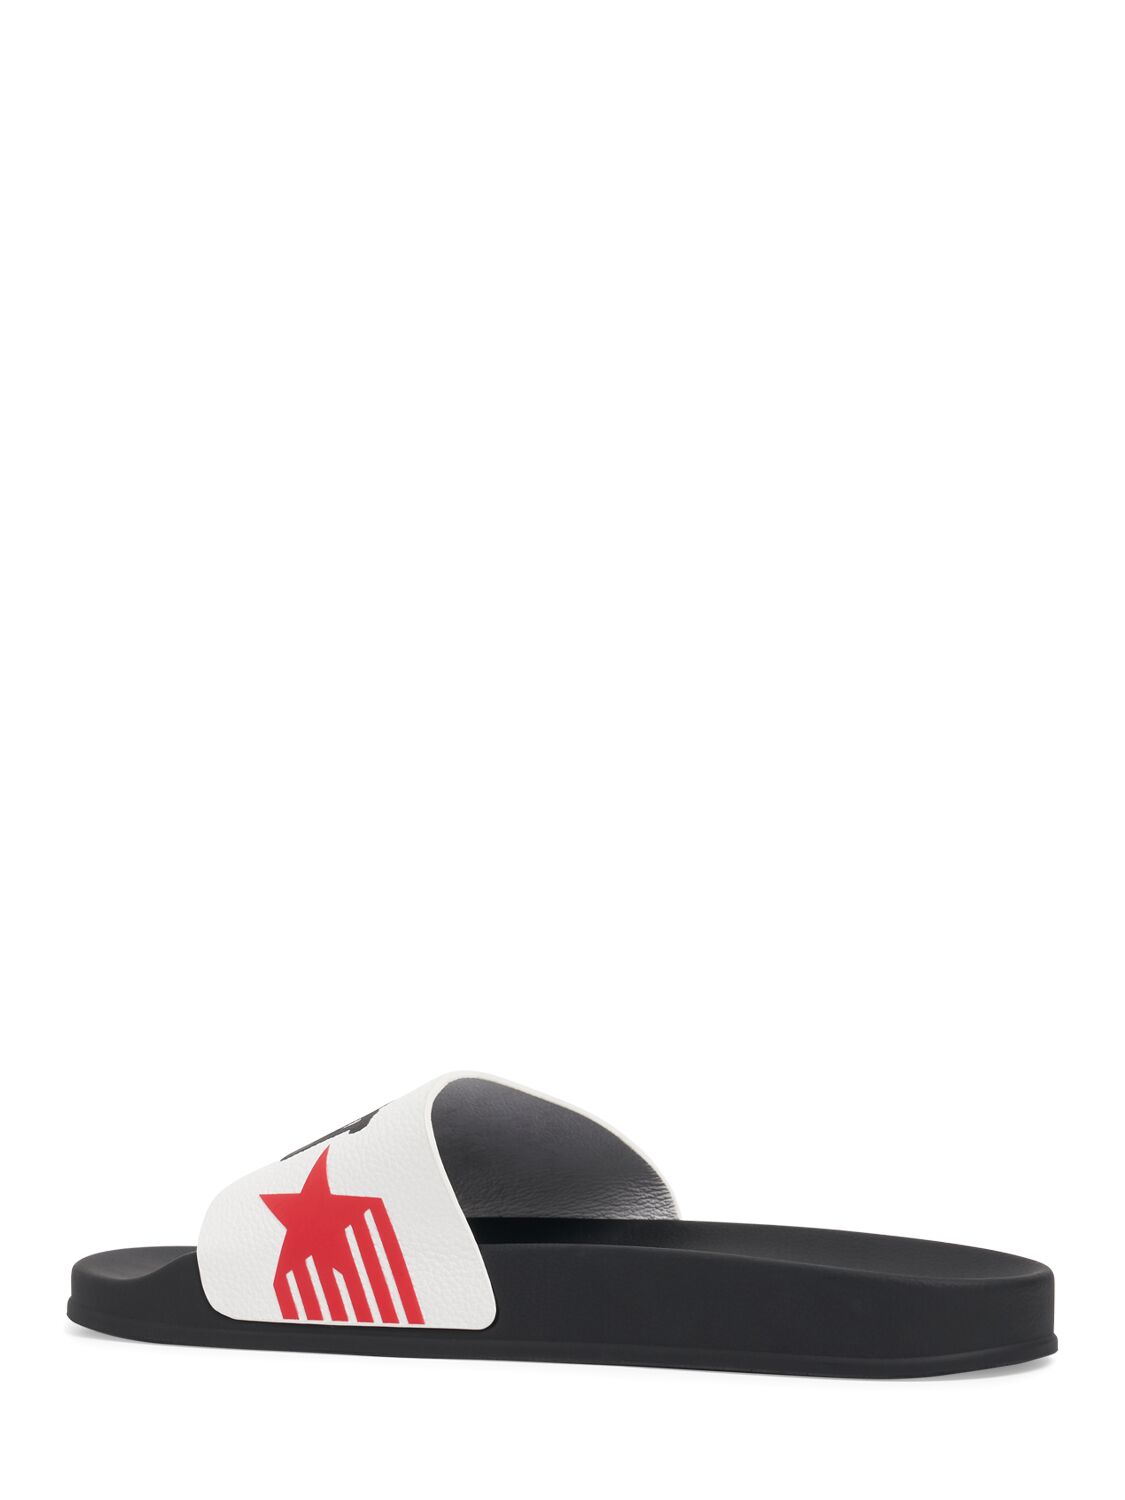 Shop Dsquared2 Rocco Siffredi Slide Sandals In White,red